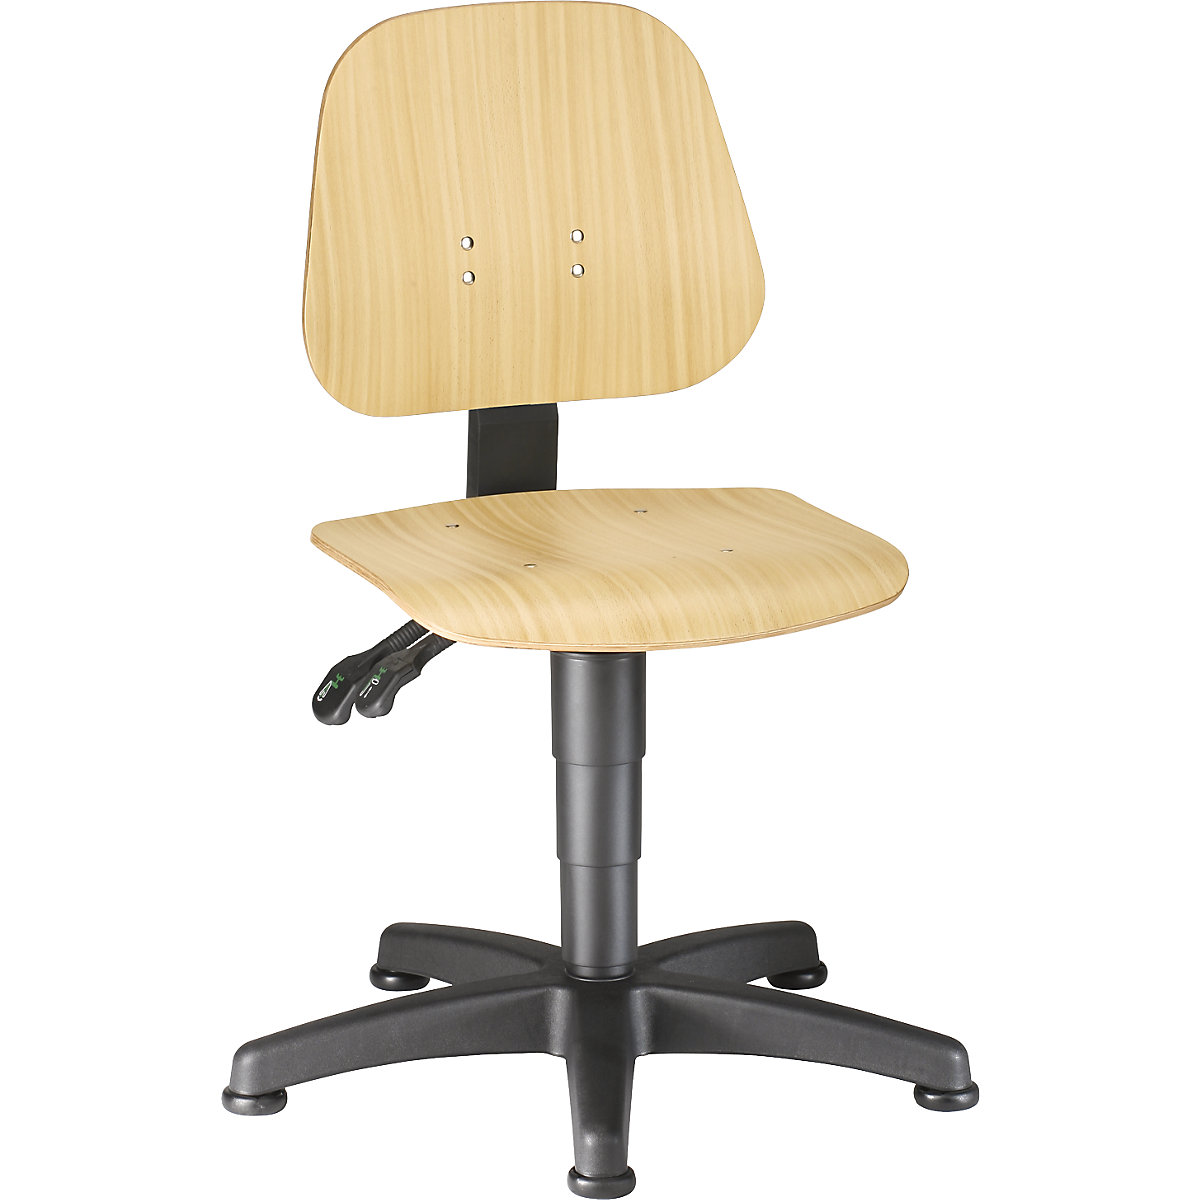 Pracovní otočná židle – bimos, s přestavováním výšky plynovým pístem, bukové vrstvené dřevo, s podlahovými patkami-4